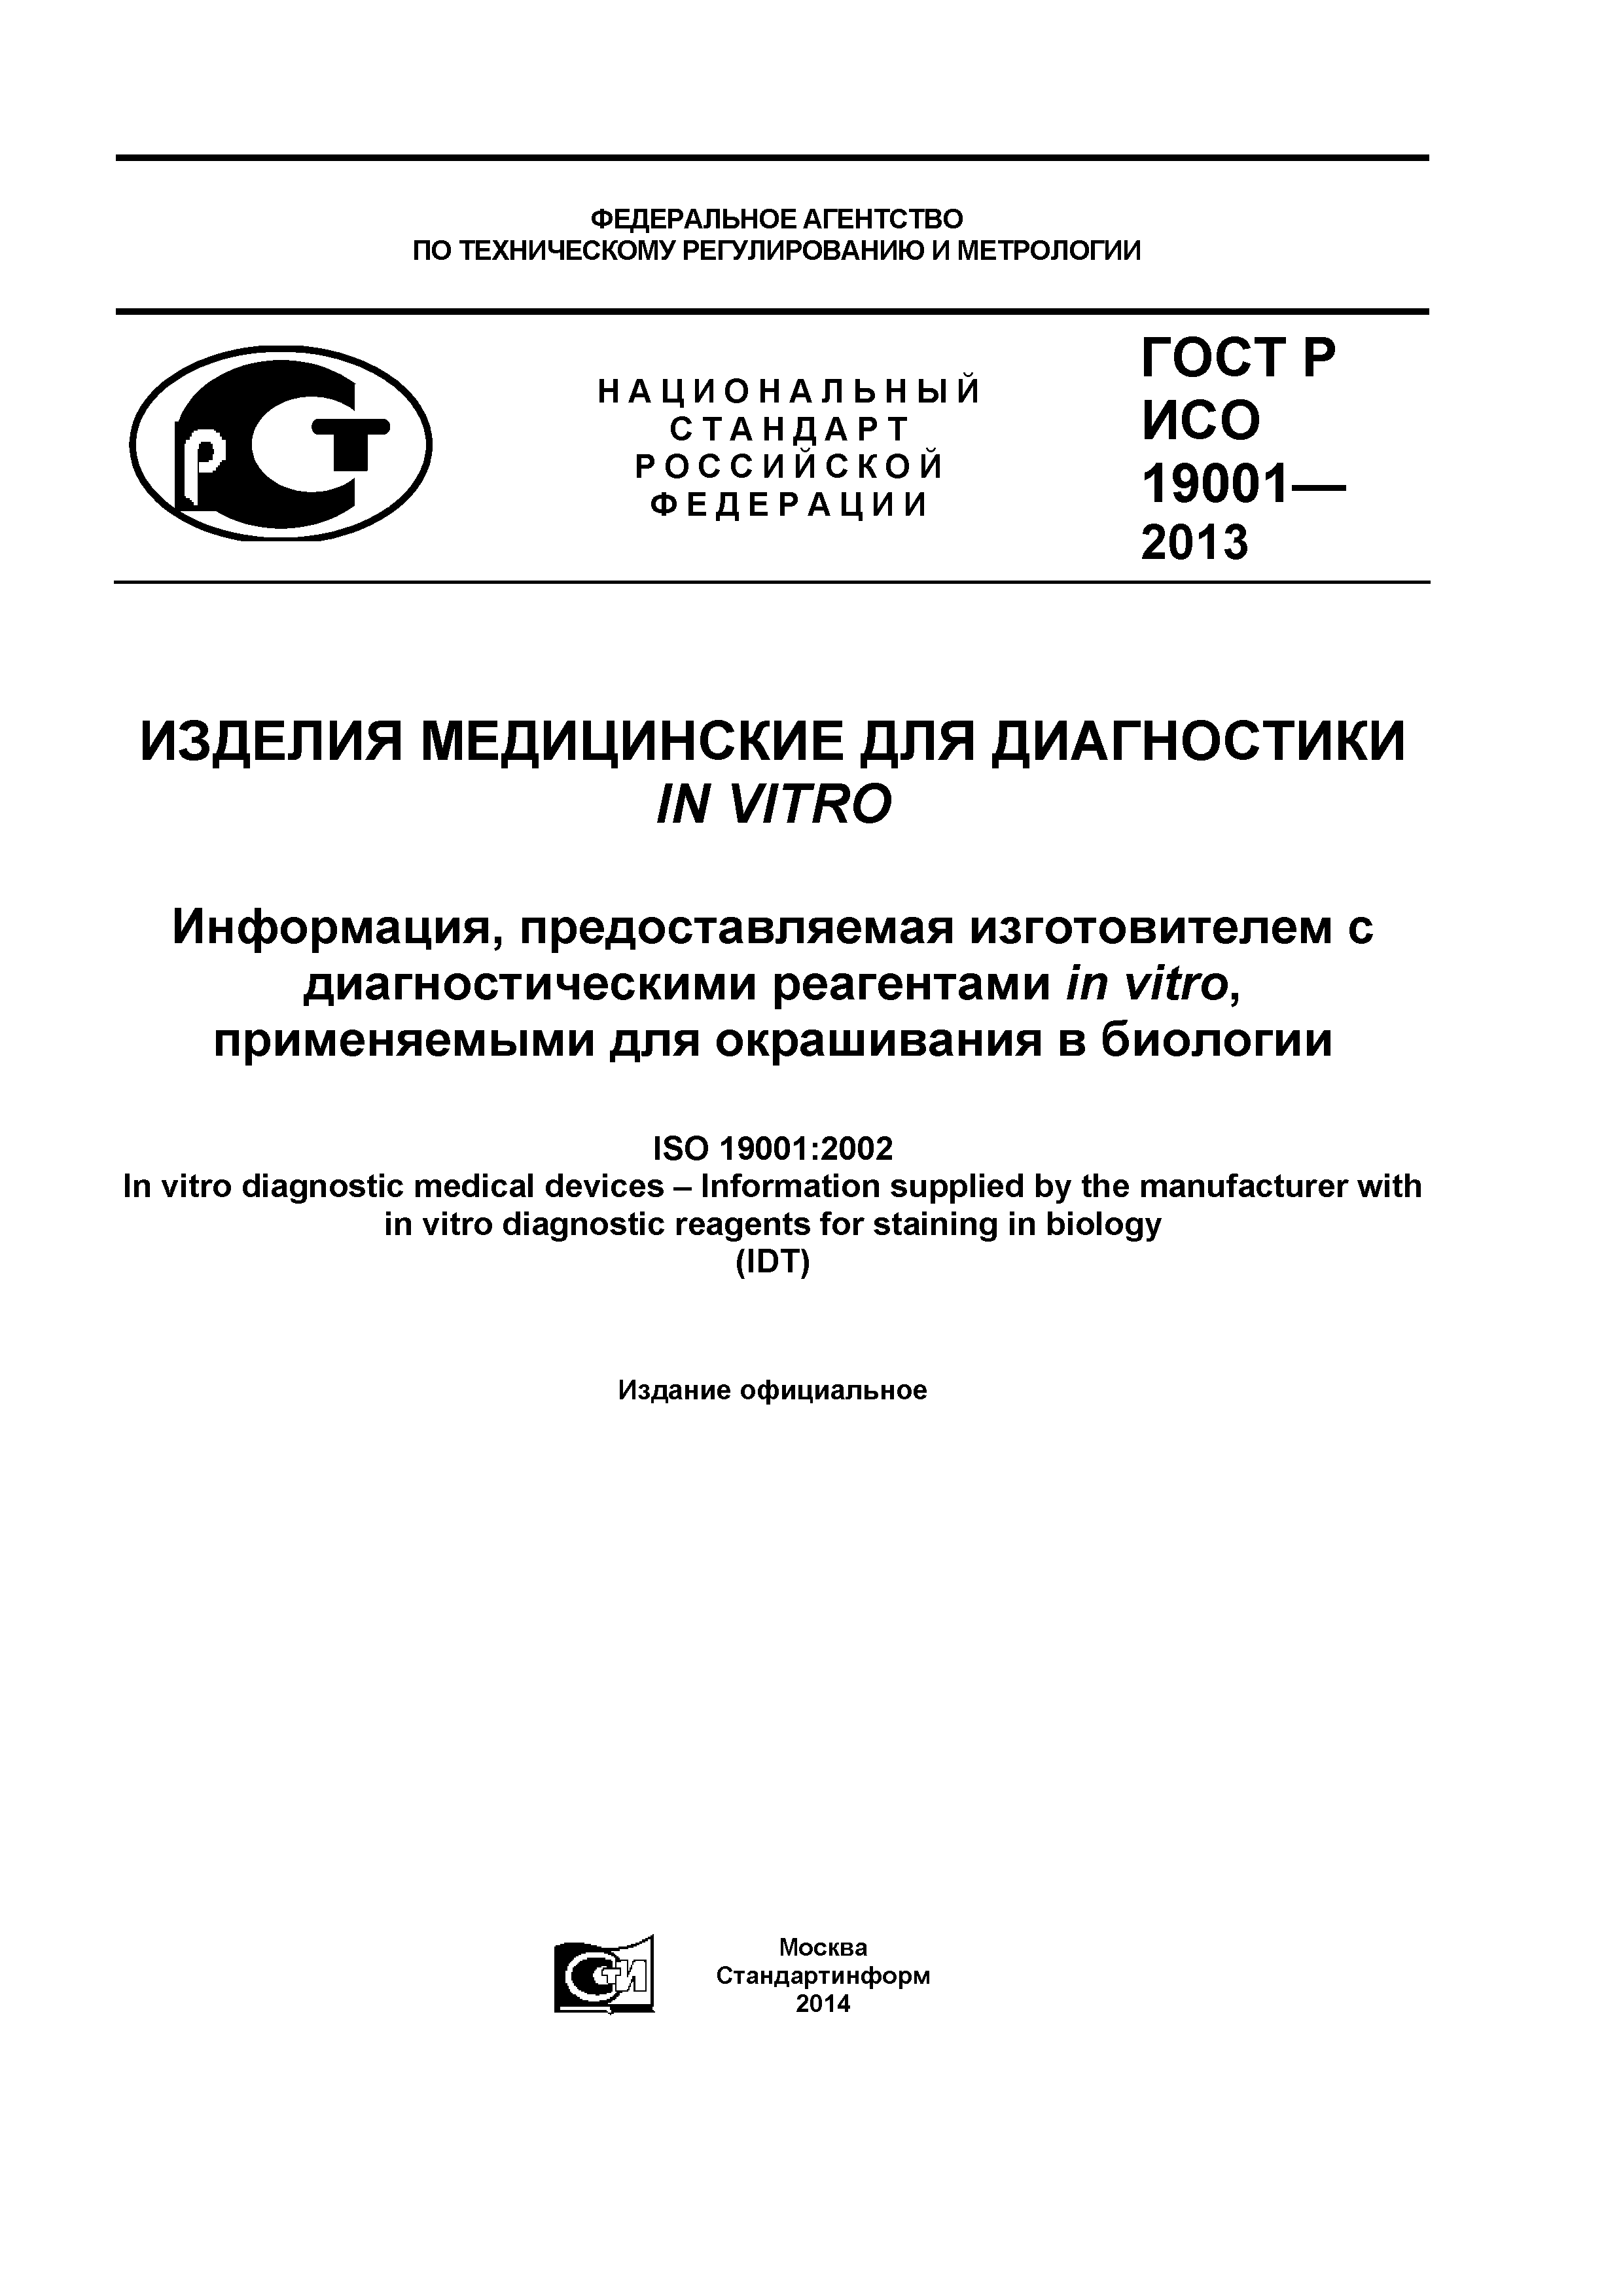 ГОСТ Р ИСО 19001-2013